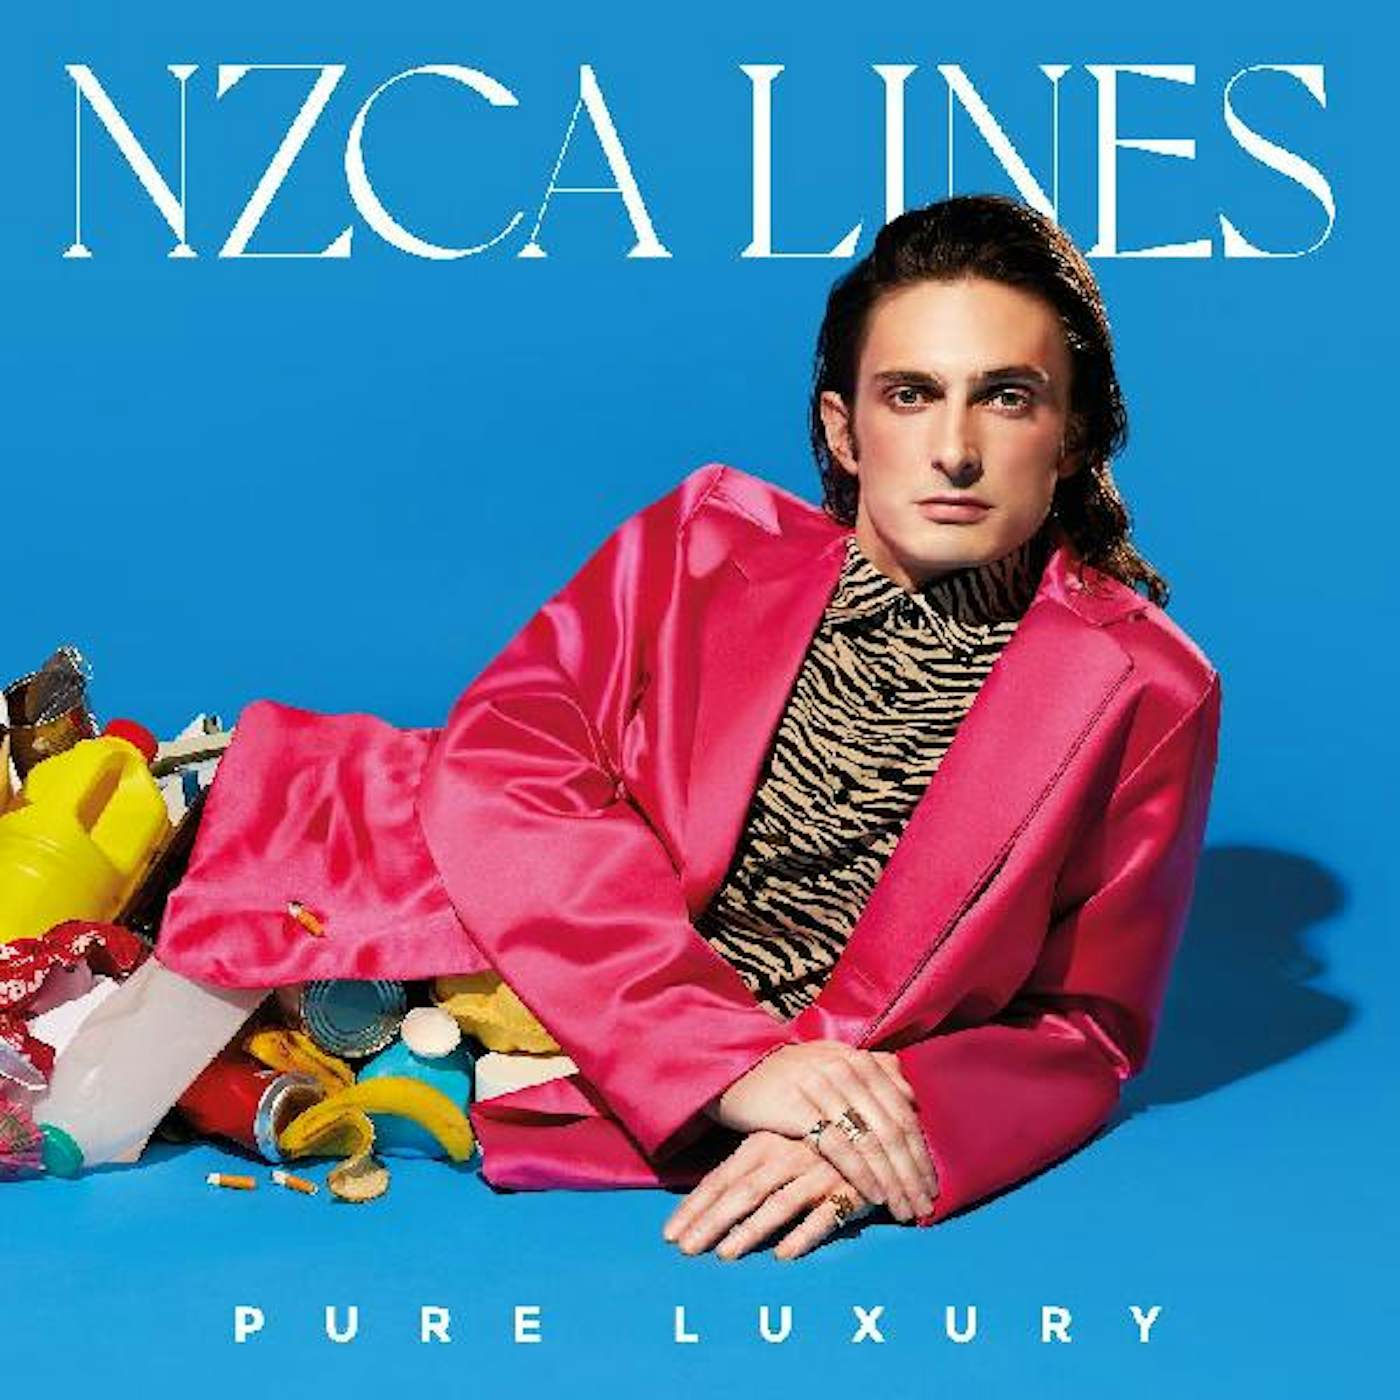 NZCA LINES Pure Luxury Vinyl Record